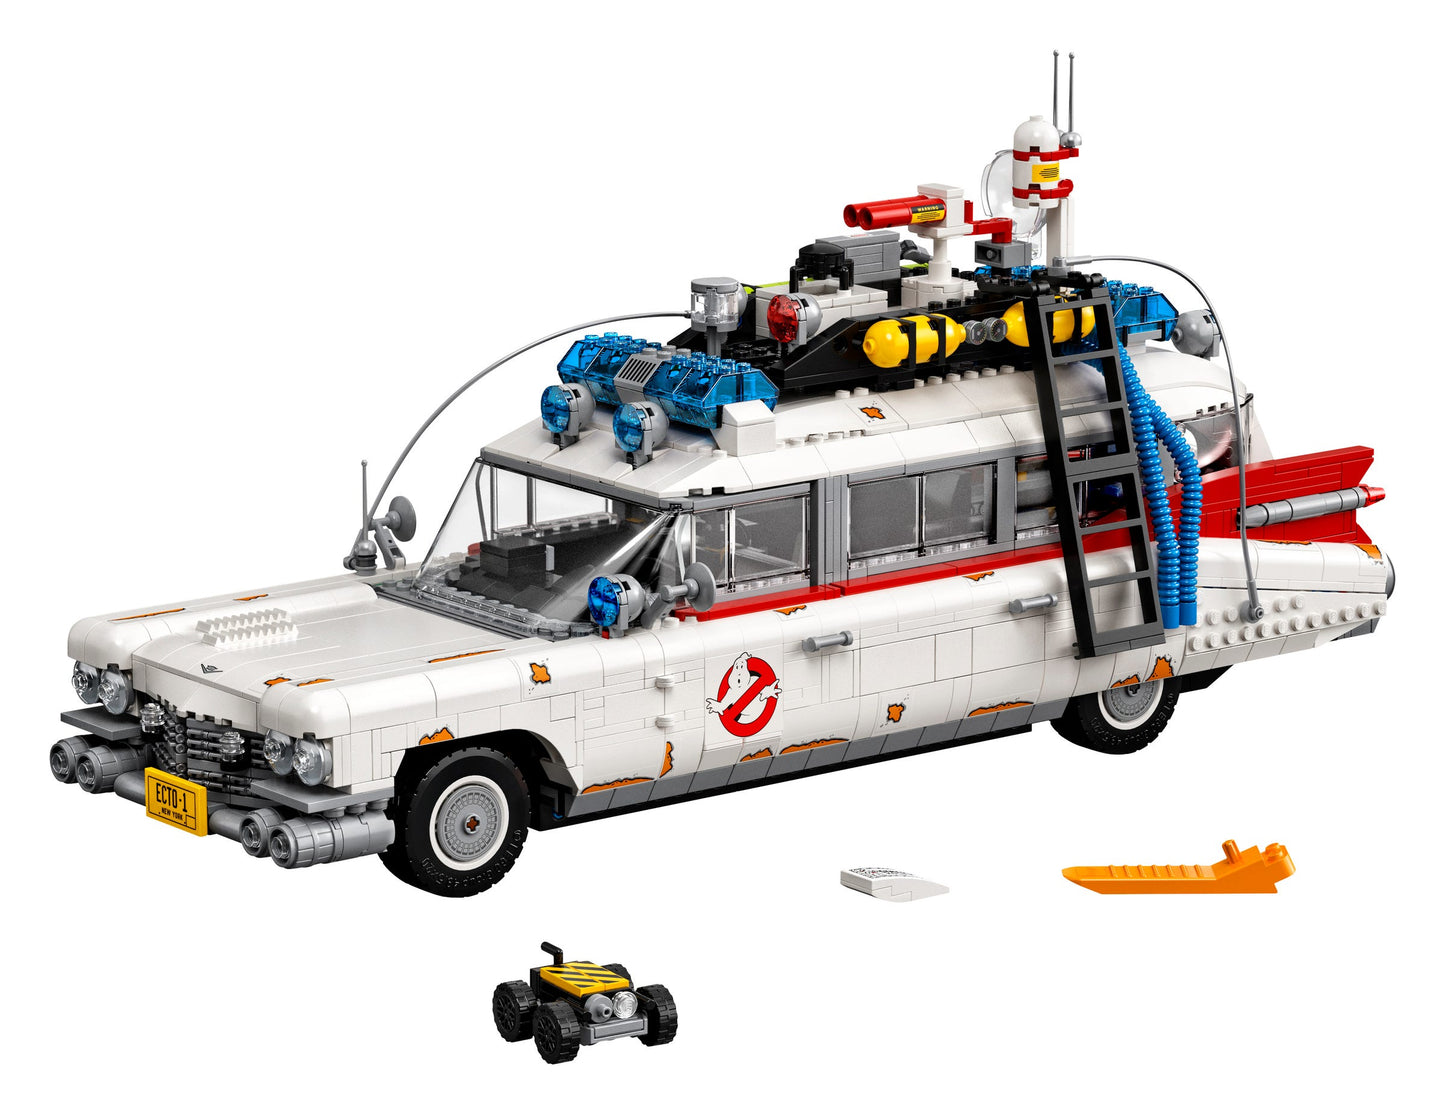 LEGO Creator Ghostbuster ECTO-1 10274